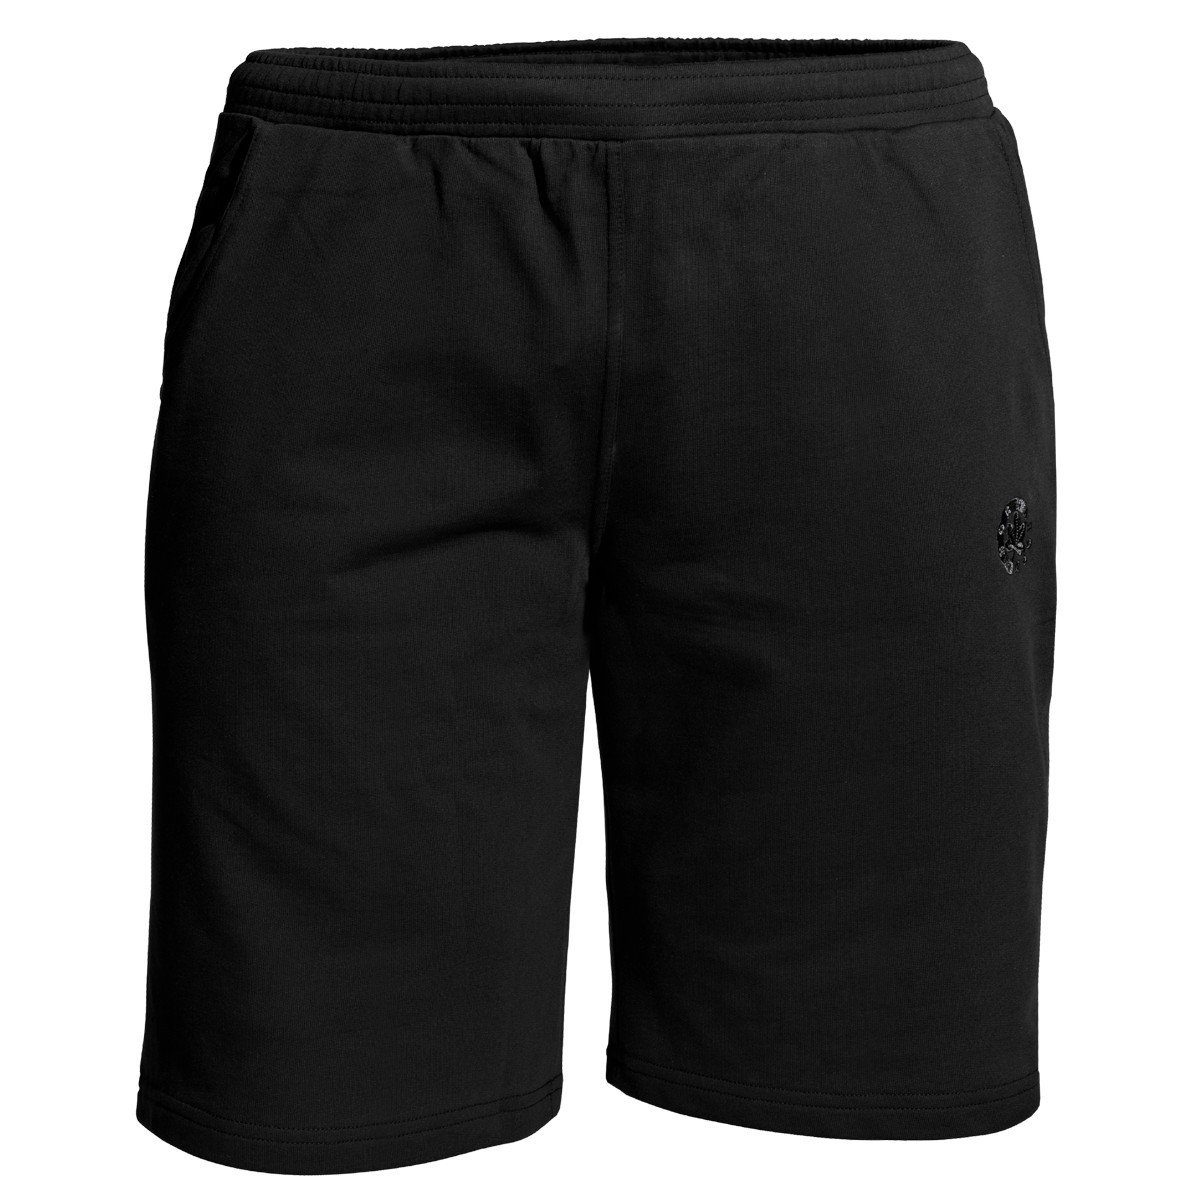 AHORN schwarz Ahorn Sportswear Jogg-Bermudas Herren Übergrößen SPORTSWEAR Joggingbermuda